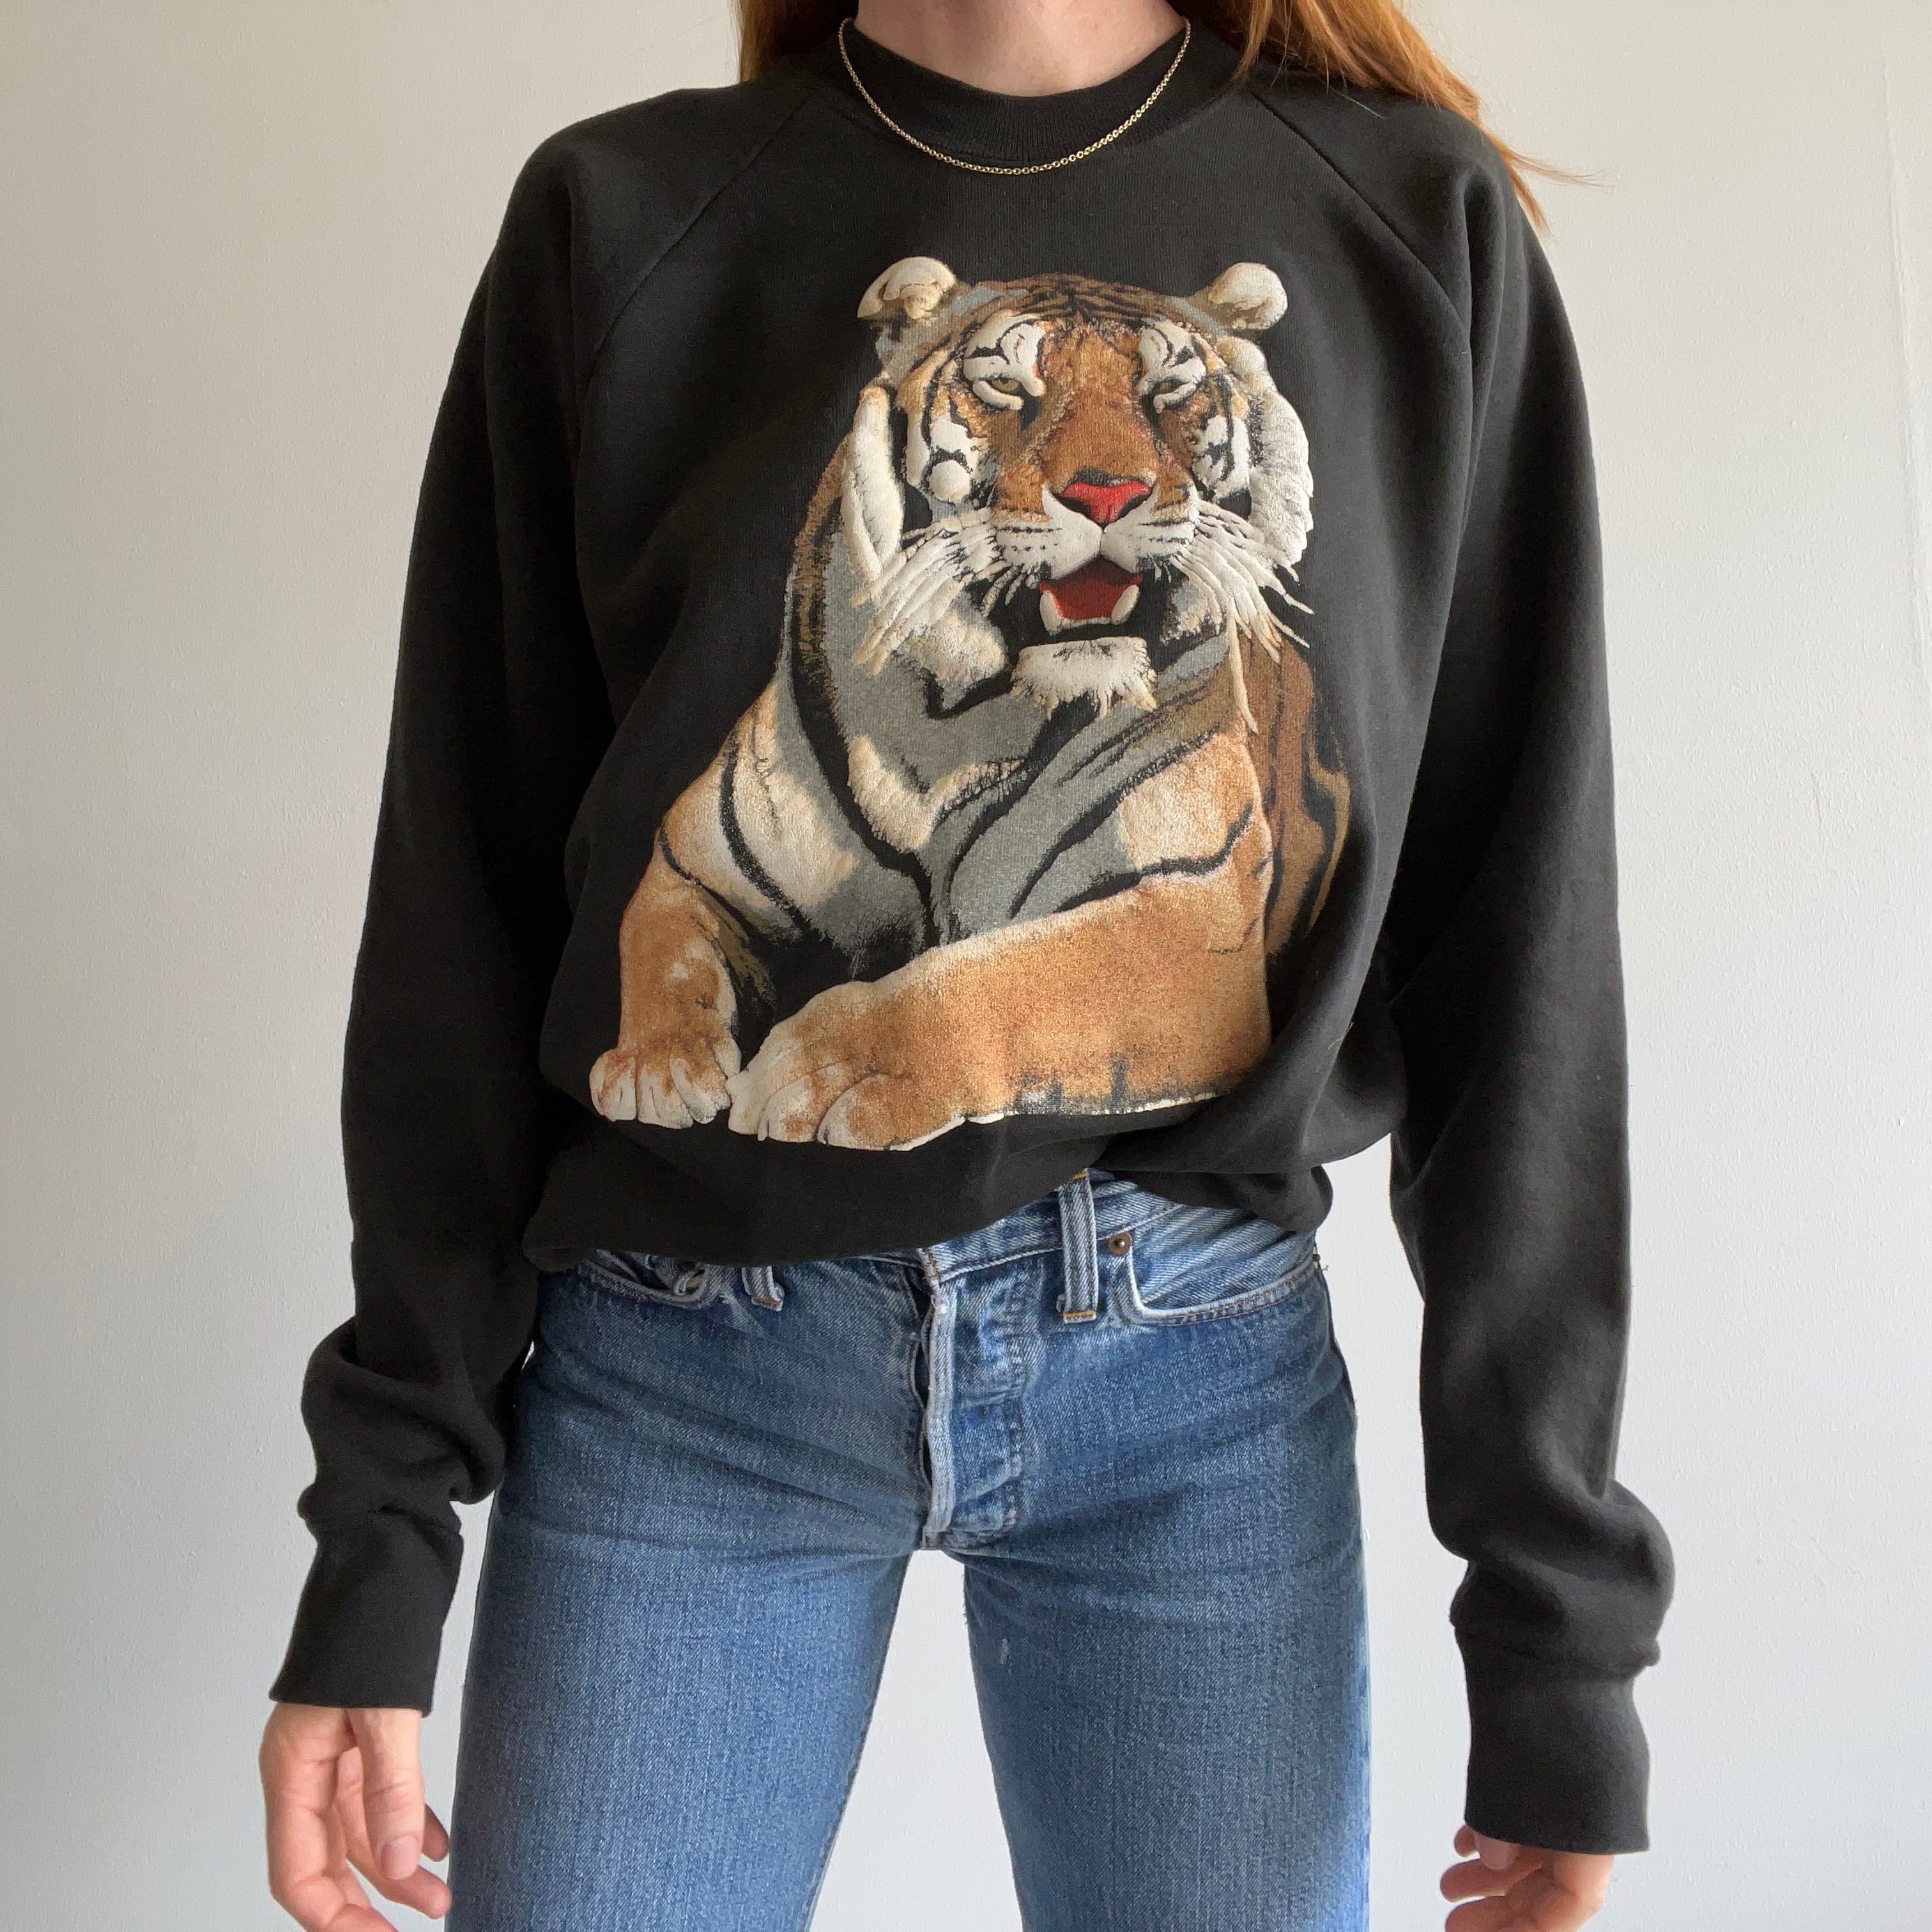 Sweat-shirt Tigre exceptionnel des années 1990 par Oneita - WOWOWOW